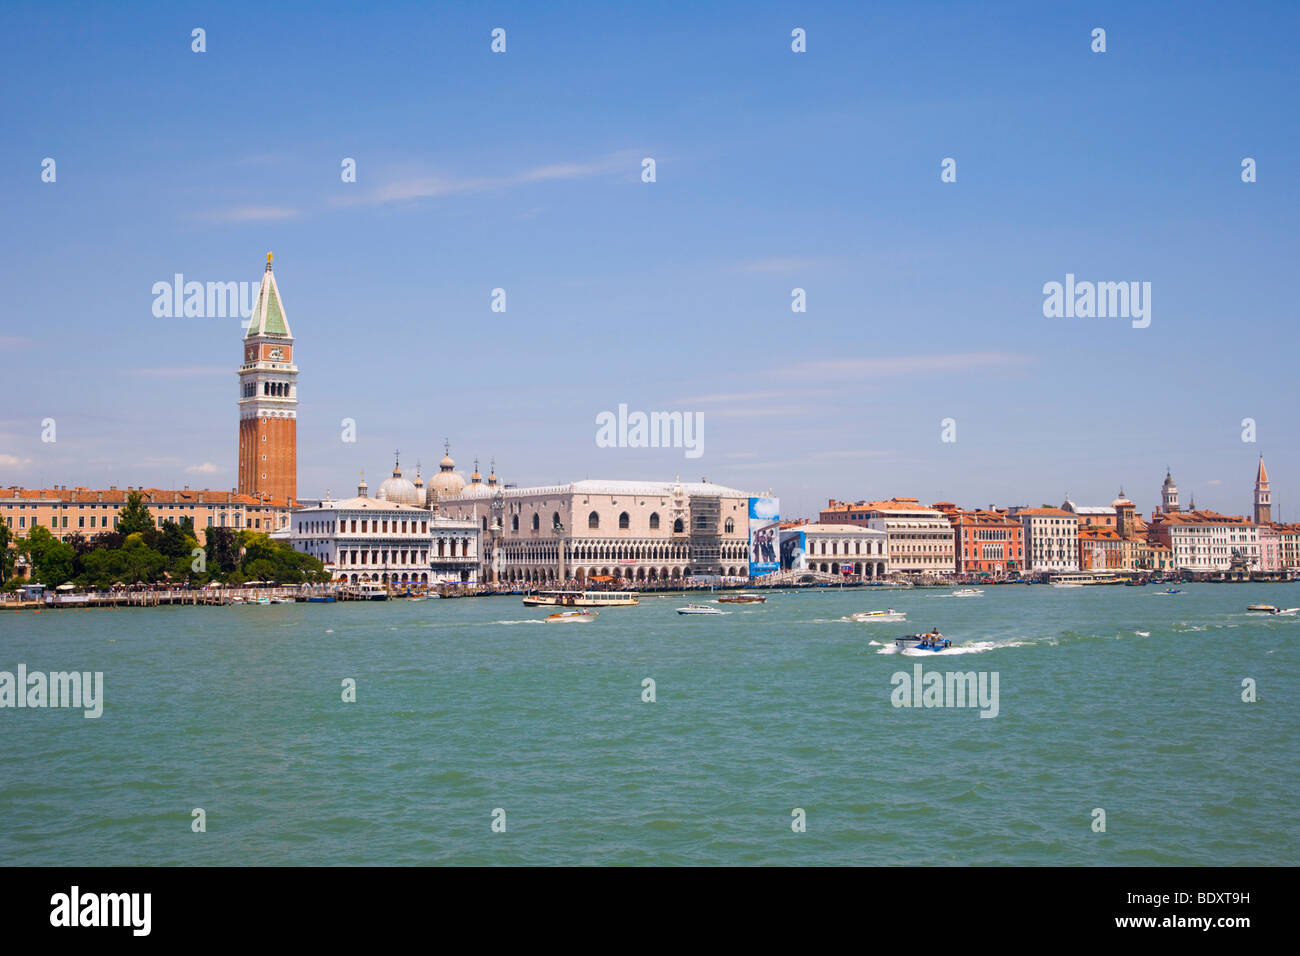 Vista su Piazza San Marco con il Campanile di San Marco, il Campanile ed il Palazzo Ducale, il Palazzo dei Dogi, dal Canale della Gi Foto Stock